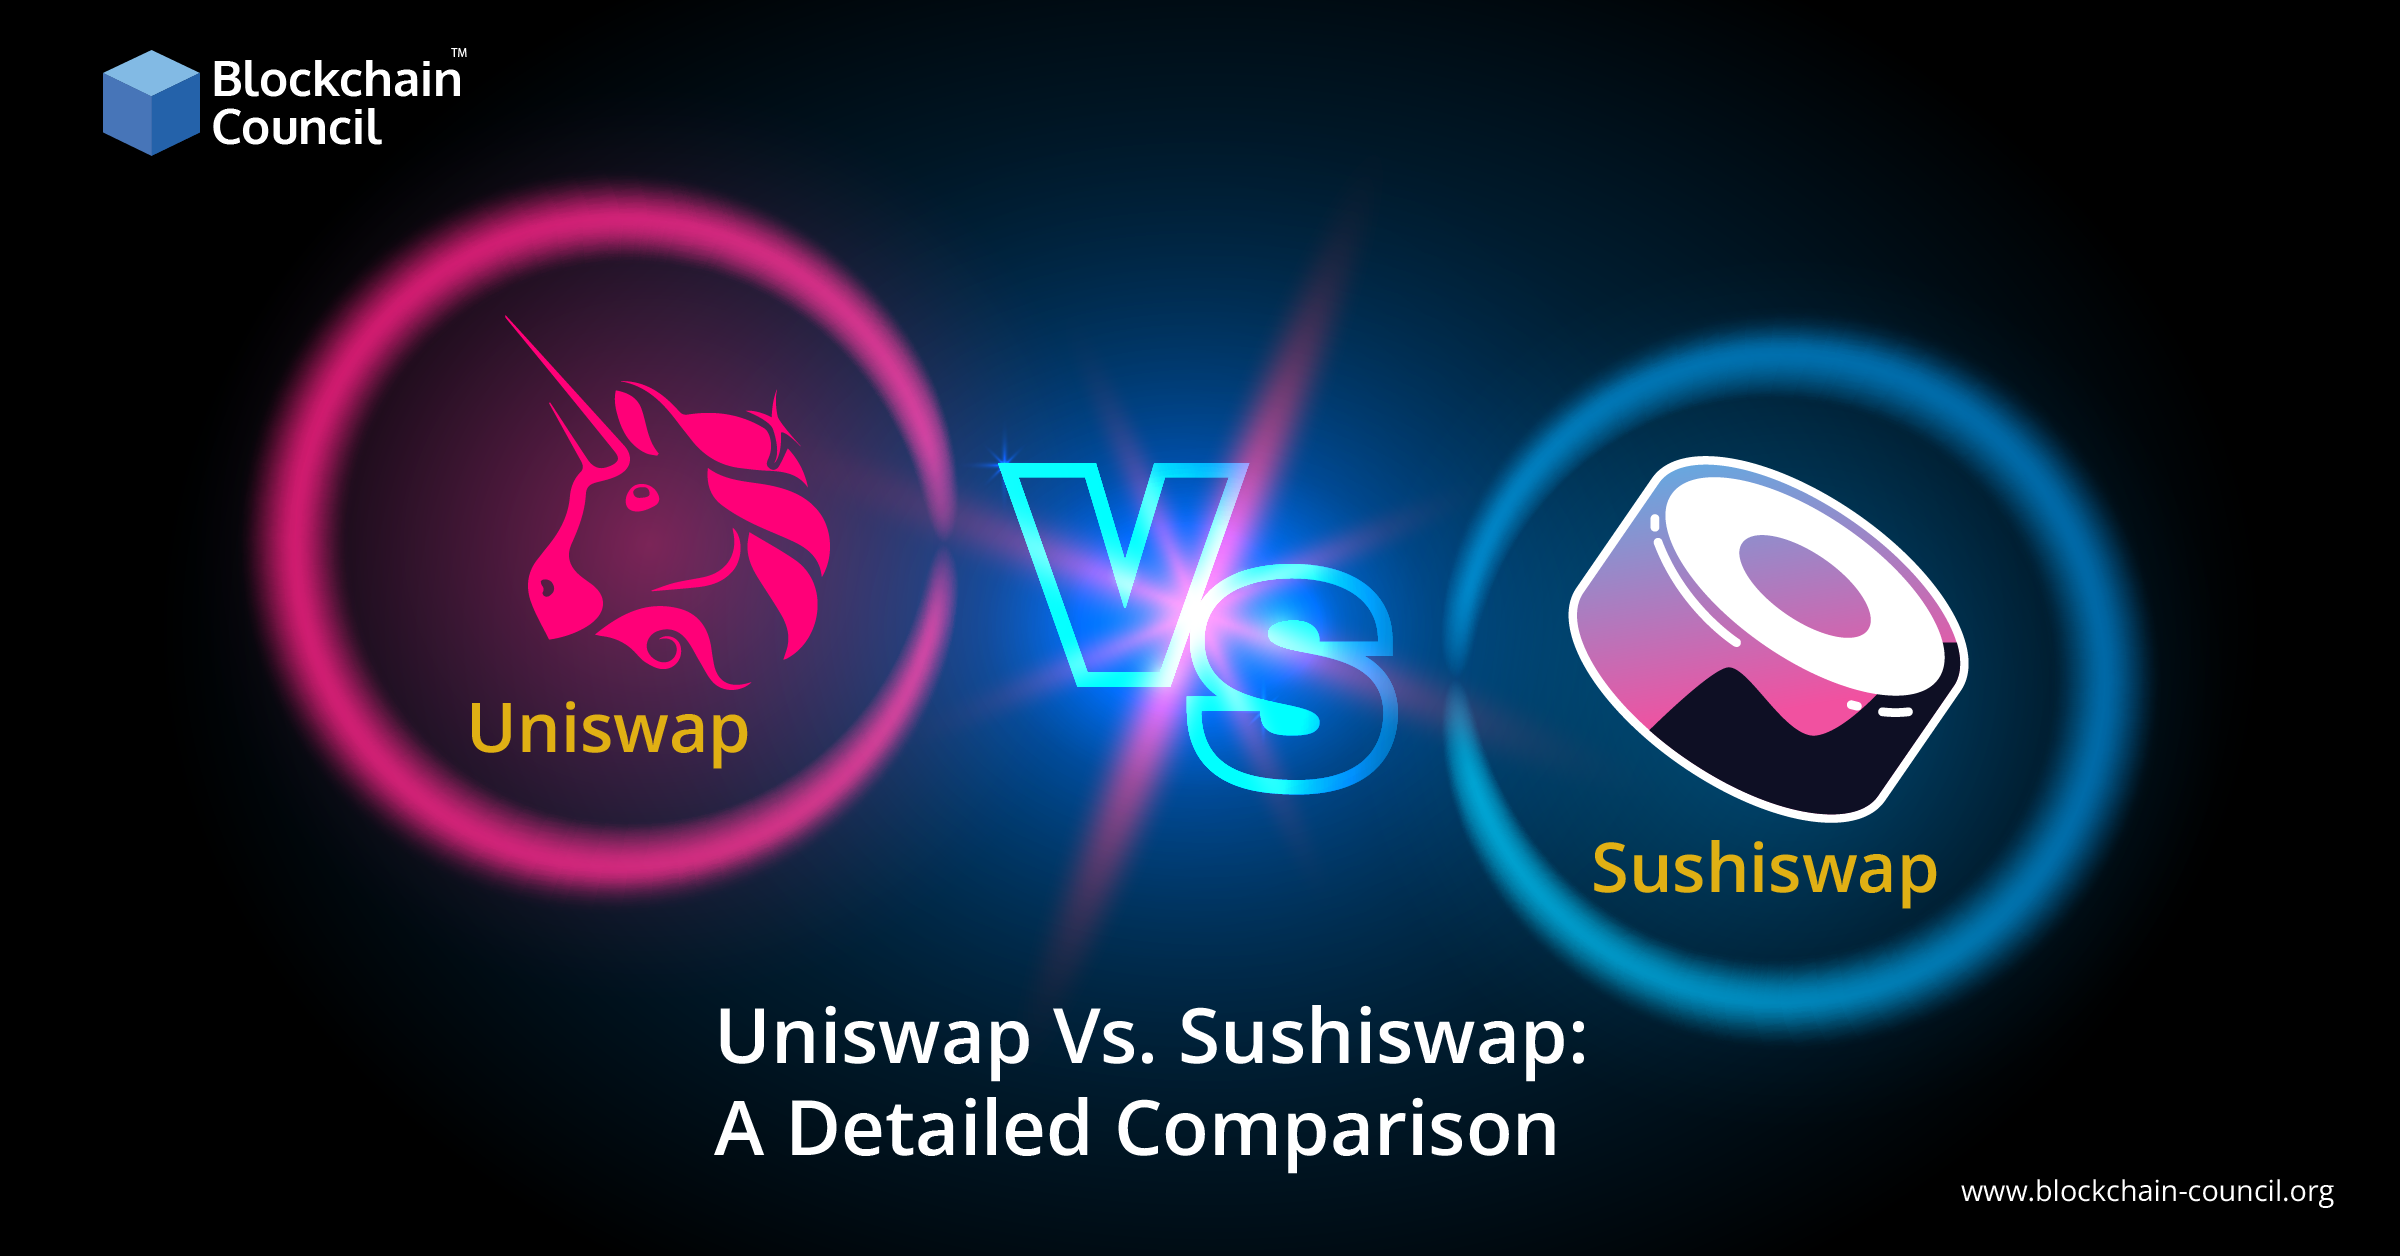 Uniswap Vs. Sushiswap A Detailed Comparison